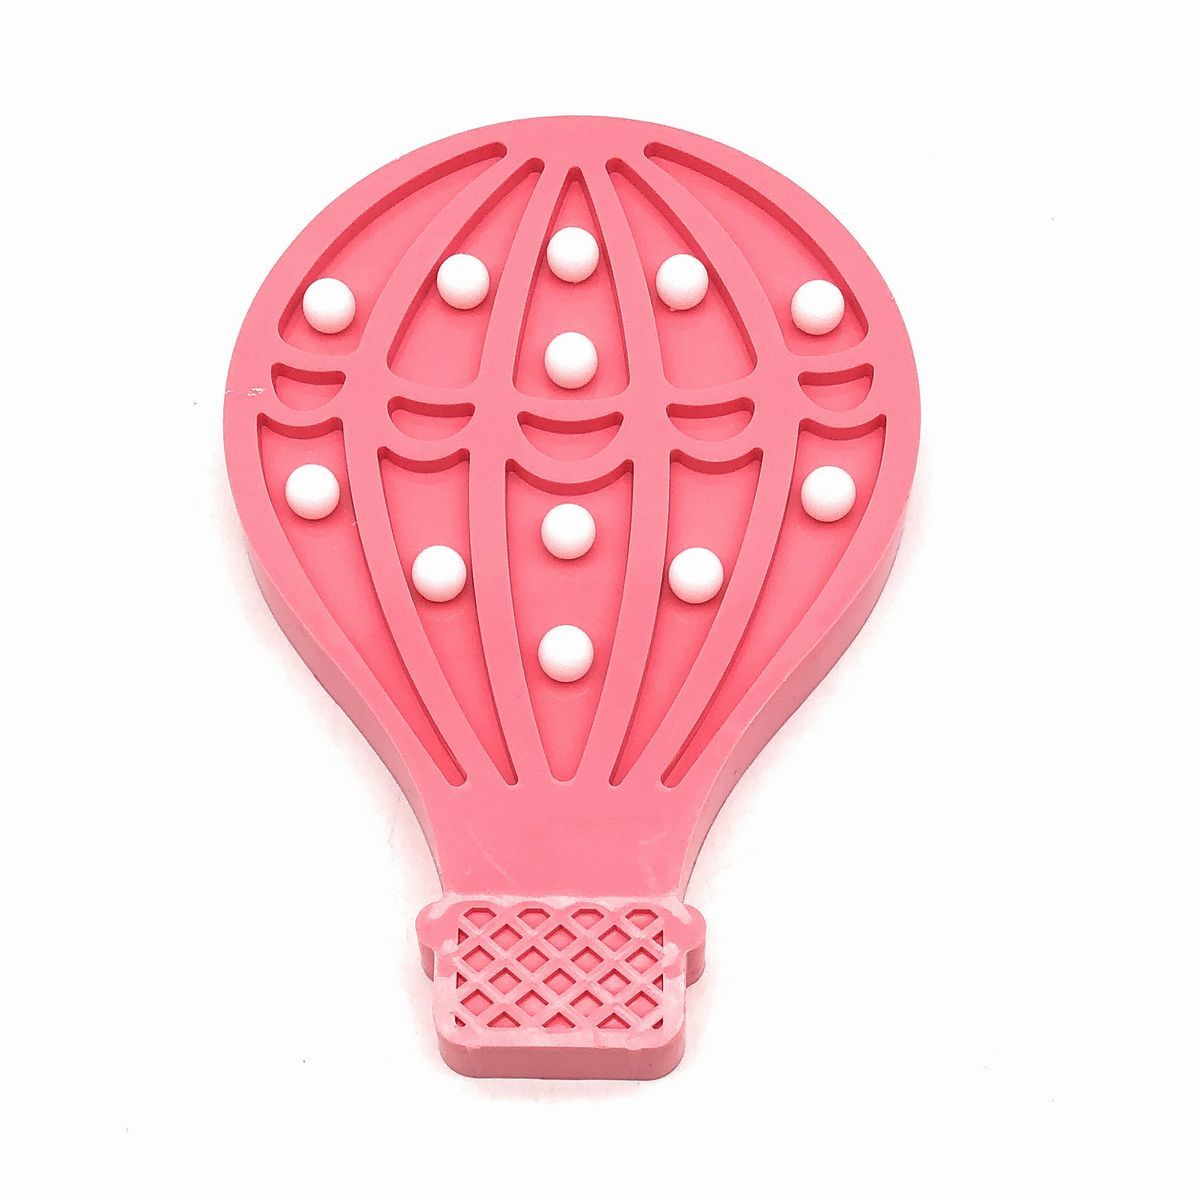 Разумный настенный предмет с воздушным шаром, пастельный цвет, светодиодный светильник с батарейным питанием (розовый), ручная работа, интерьер, разные товары, орнамент, объект